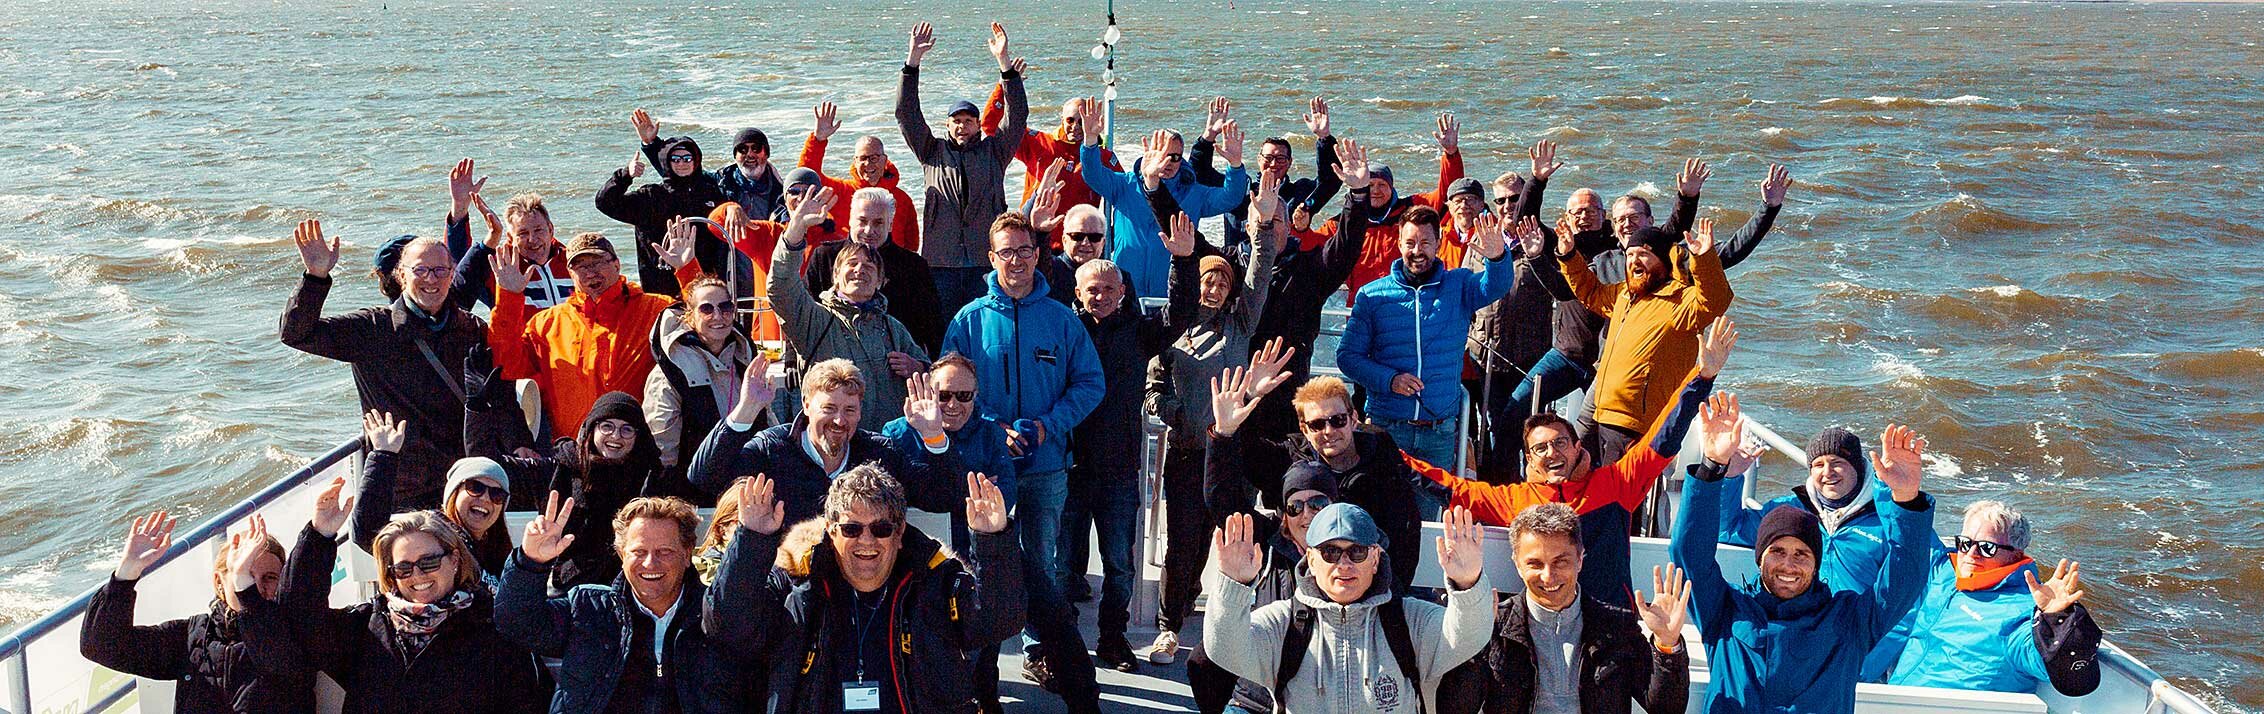 Maklerinnen und Makler auf einem Schiff im Rahmen der Aktionswoche "Saubere Nordsee", die vom CSR-Team der Fonds Finanz veranstaltet wurde